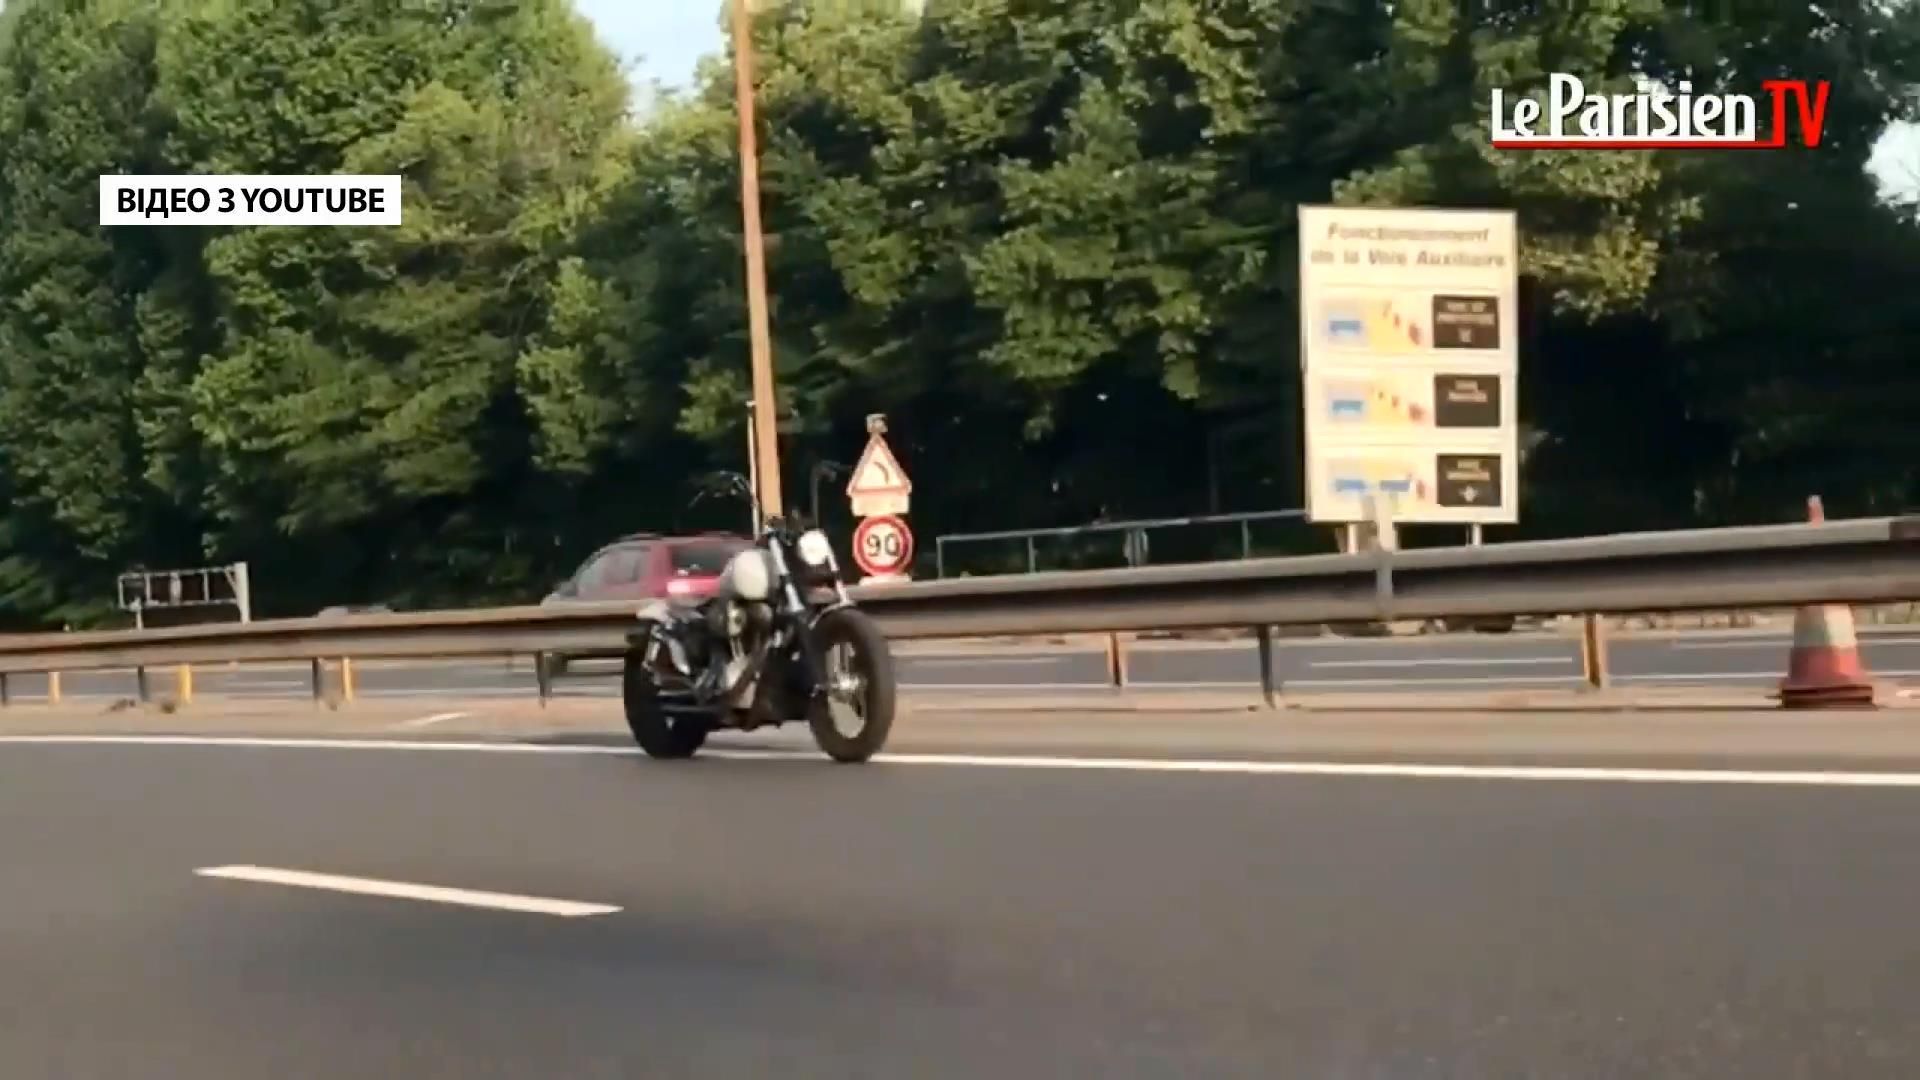 Во Франции мотоцикл ехал несколько километров без водителя после ДТП: видео